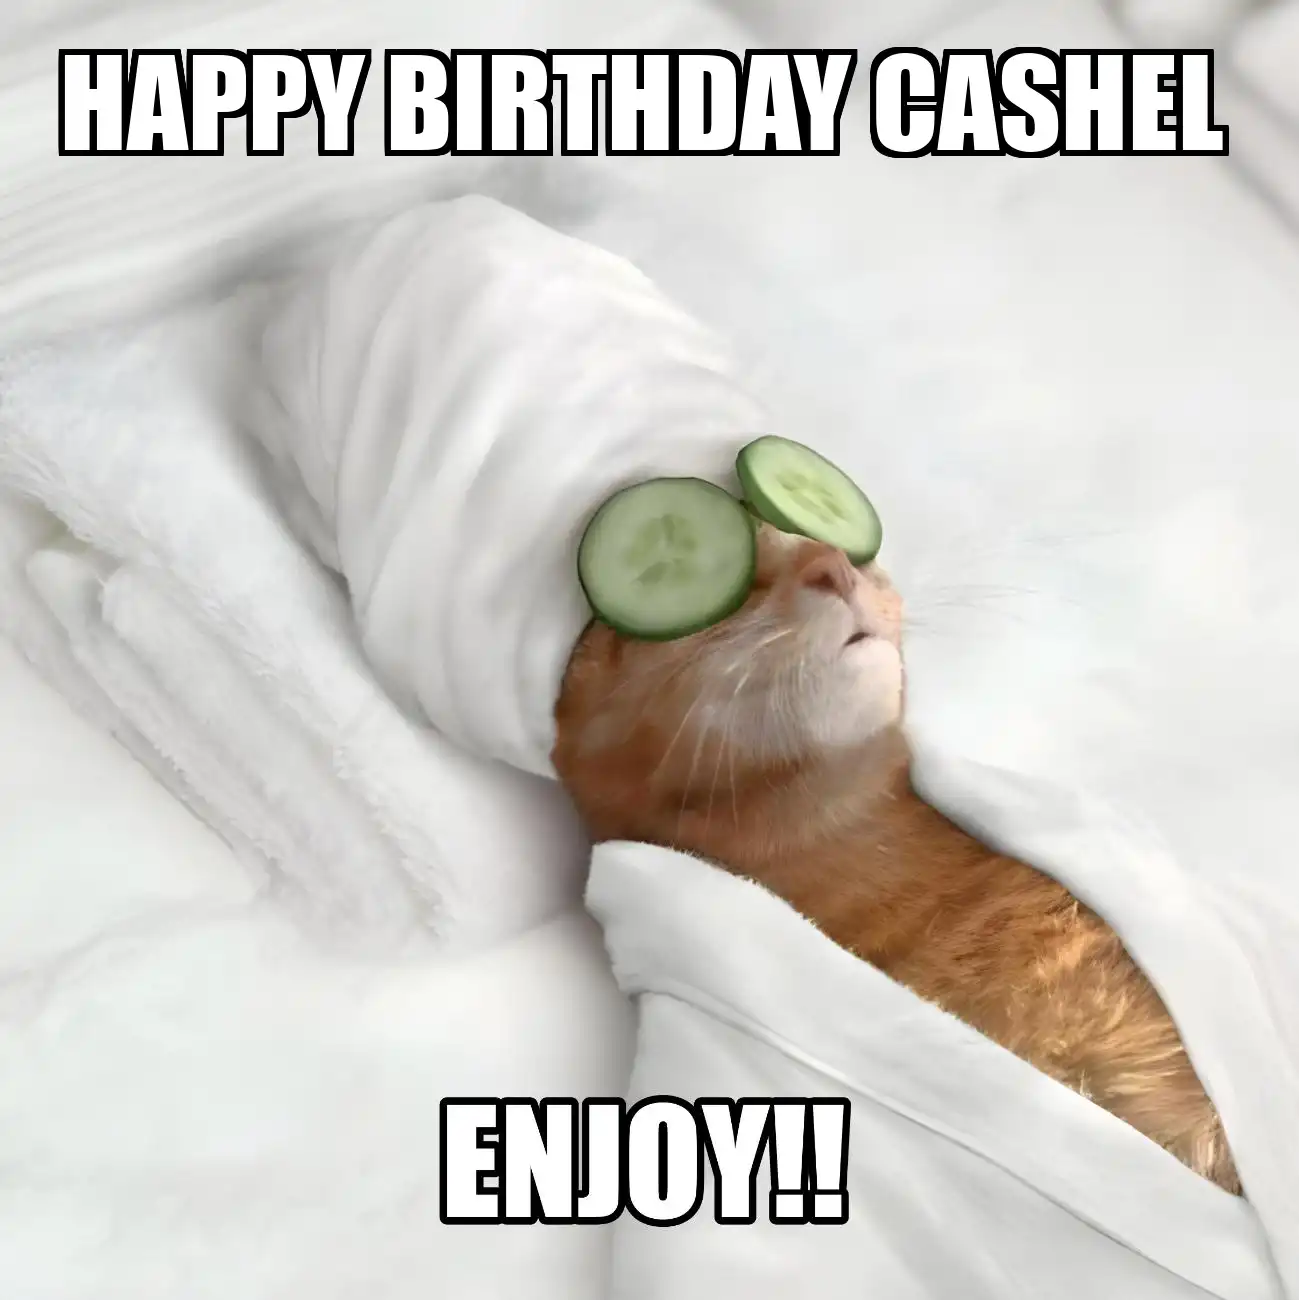 Happy Birthday Cashel Enjoy Cat Meme